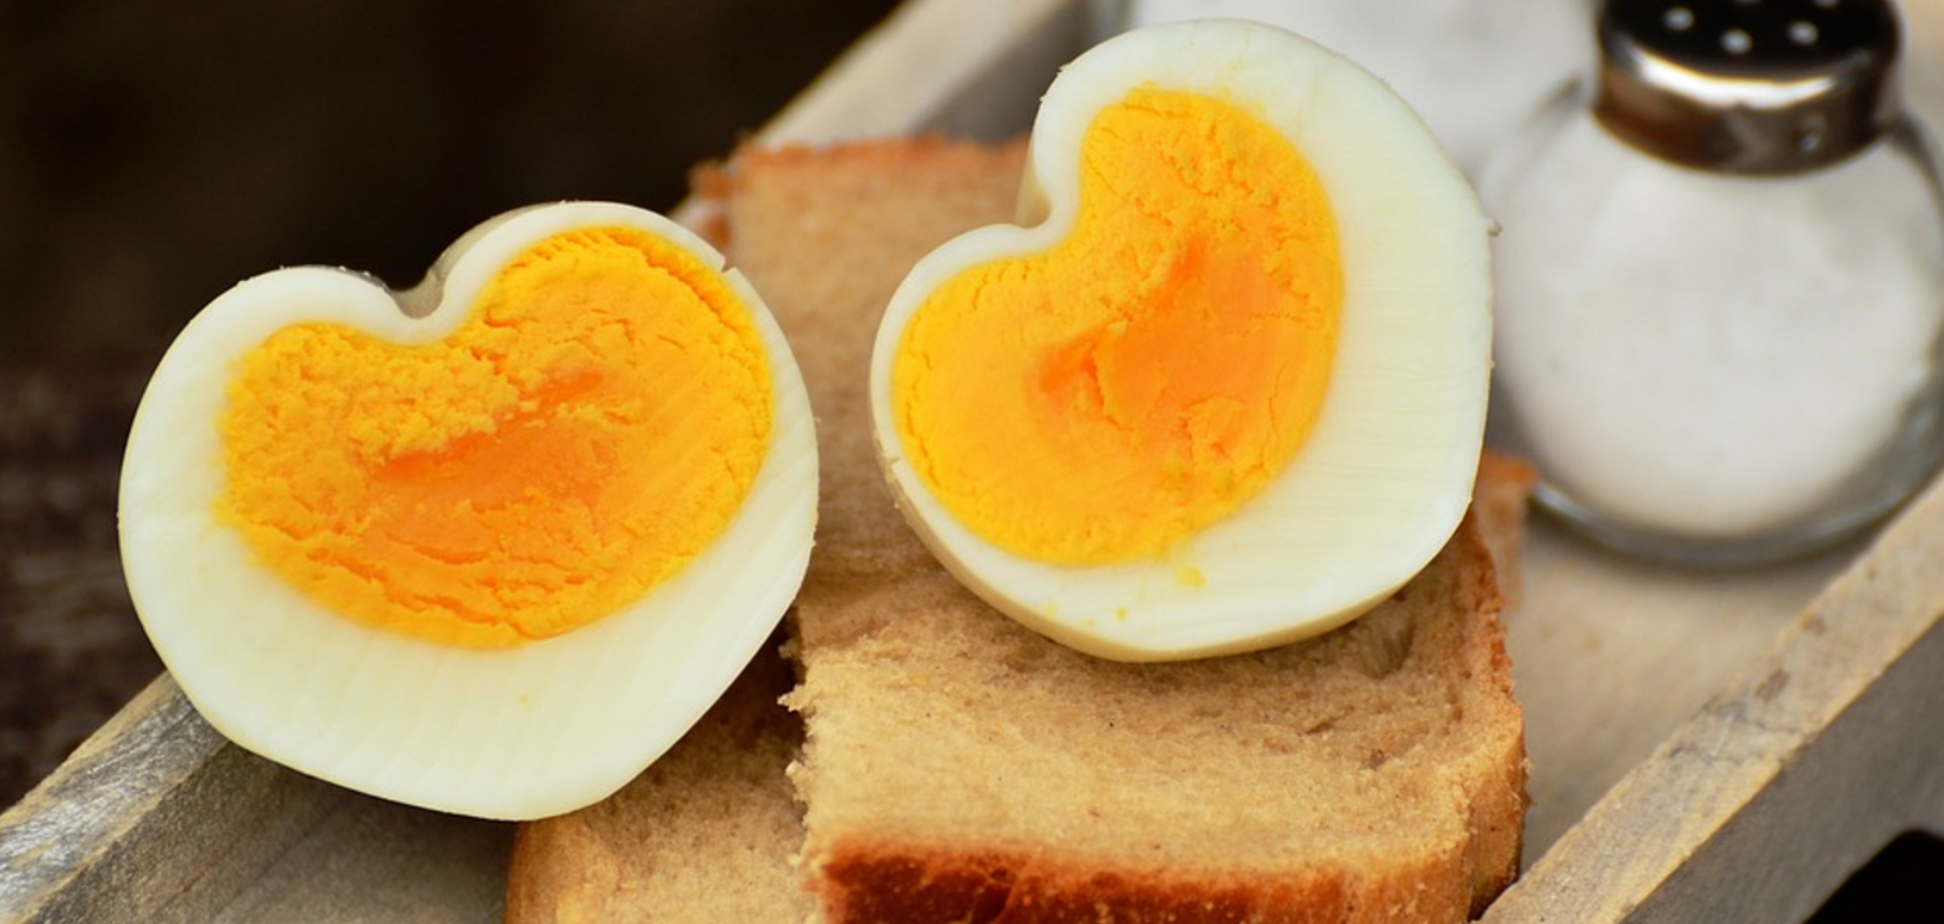  Найпростіший спосіб, щоб легко чистились яйця: як правильно та скільки варити